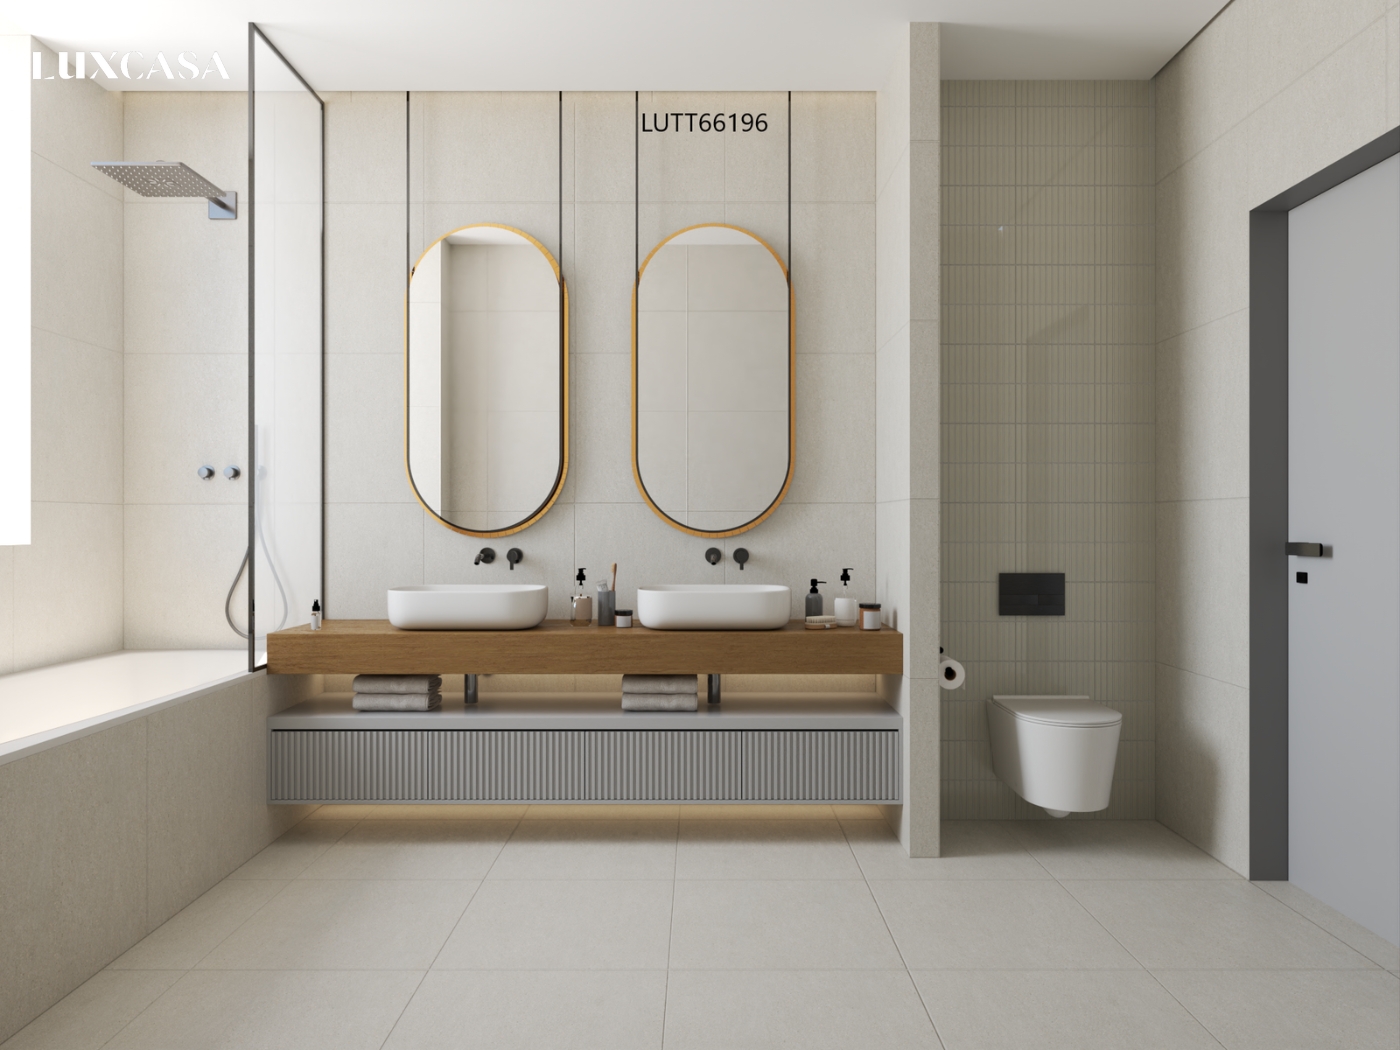 kích thước 60x60cm là một kích thước phổ biến nhất cho nhà vệ sinh